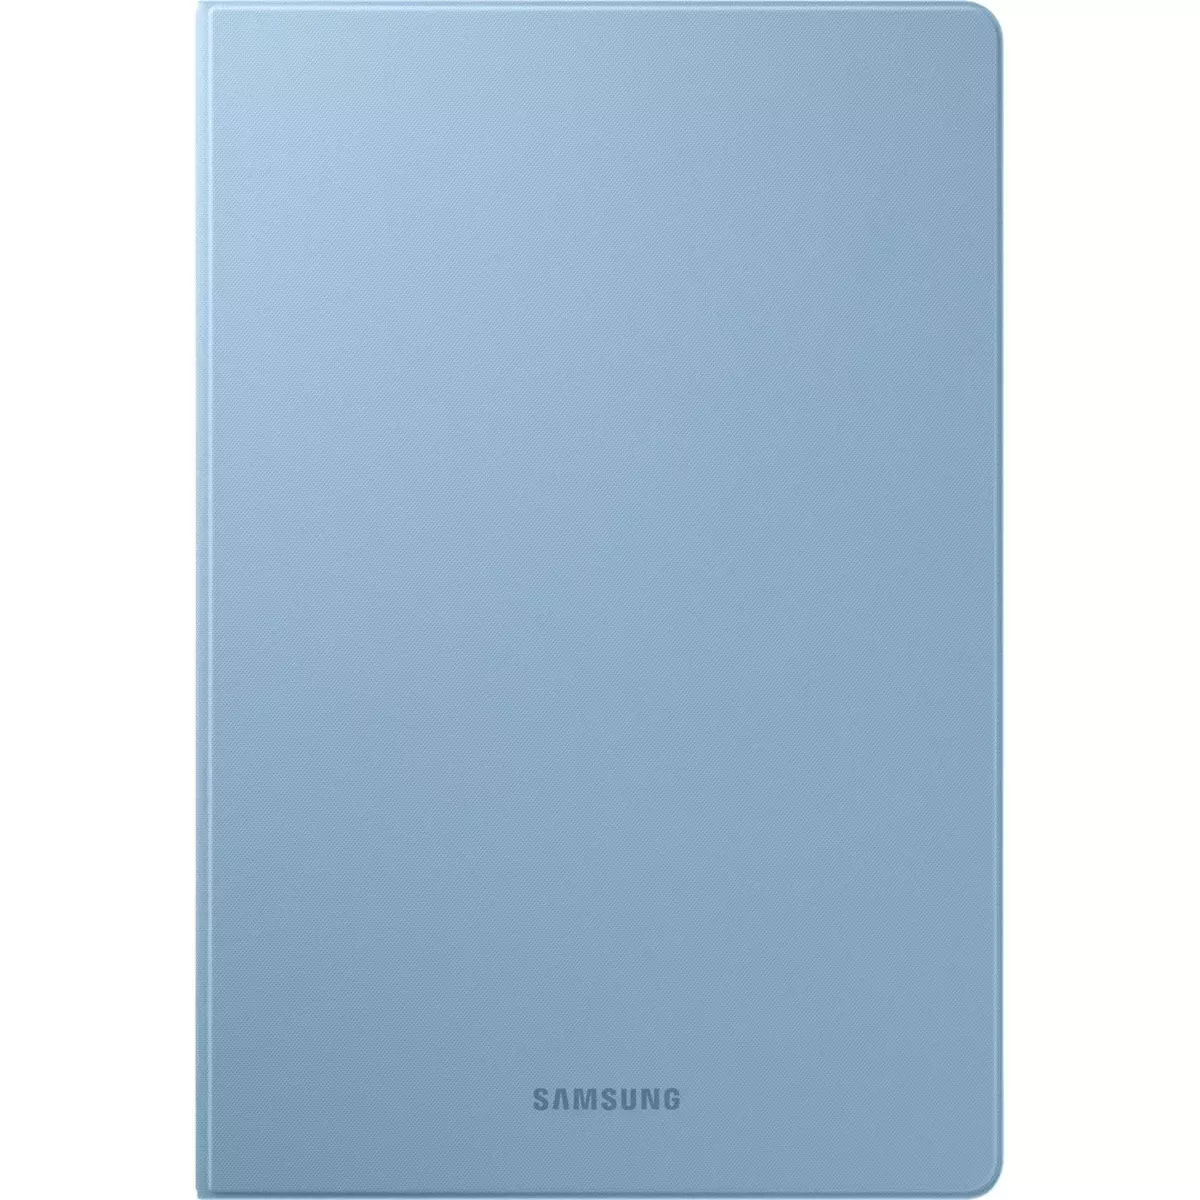 SAMSUNG Protection tablette BKCOVERT TABSLITE - Bleu